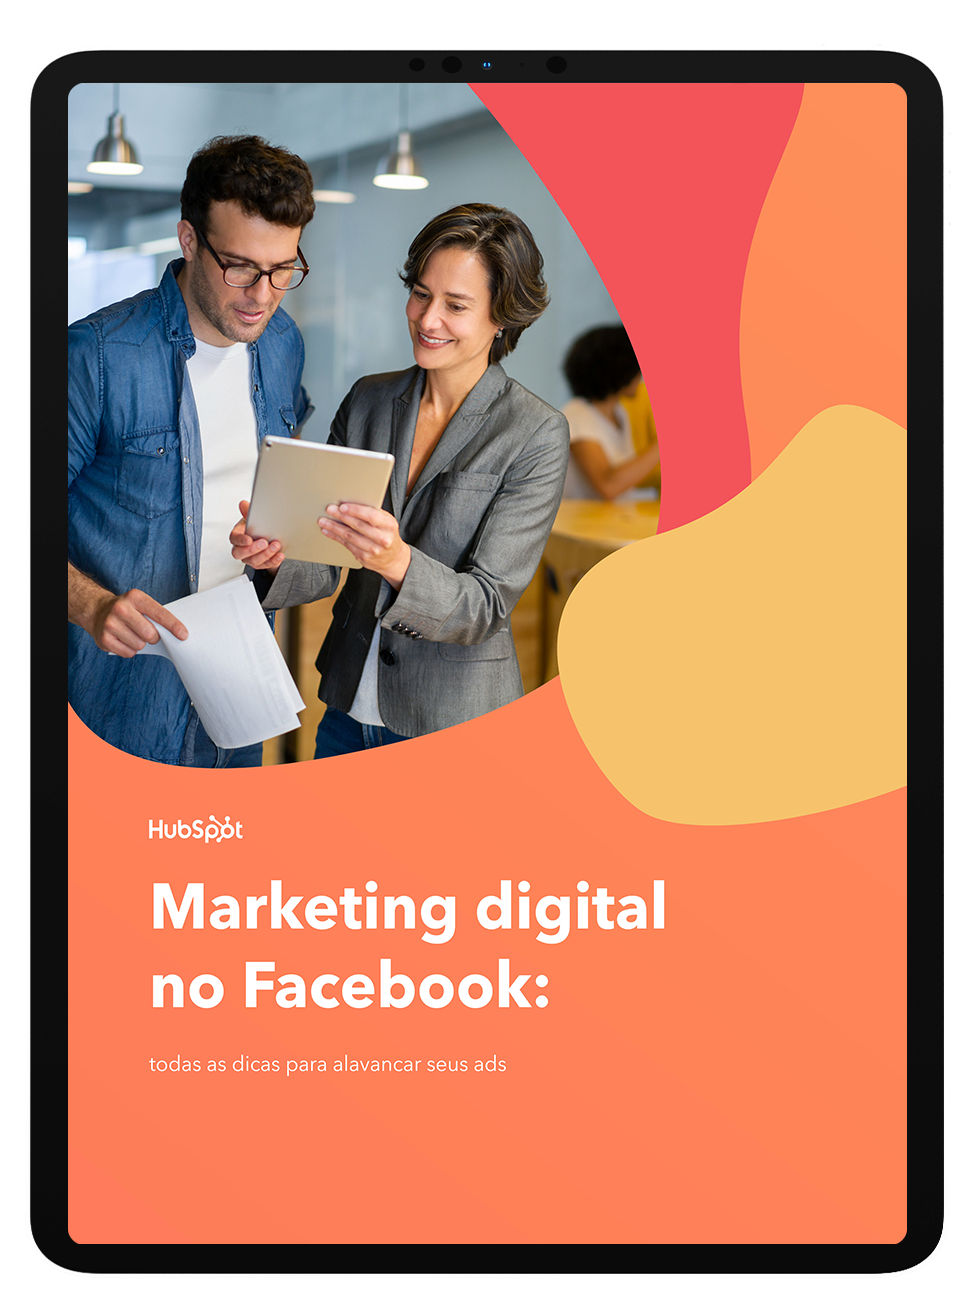 Mockup_Marketing digital no Facebook copy